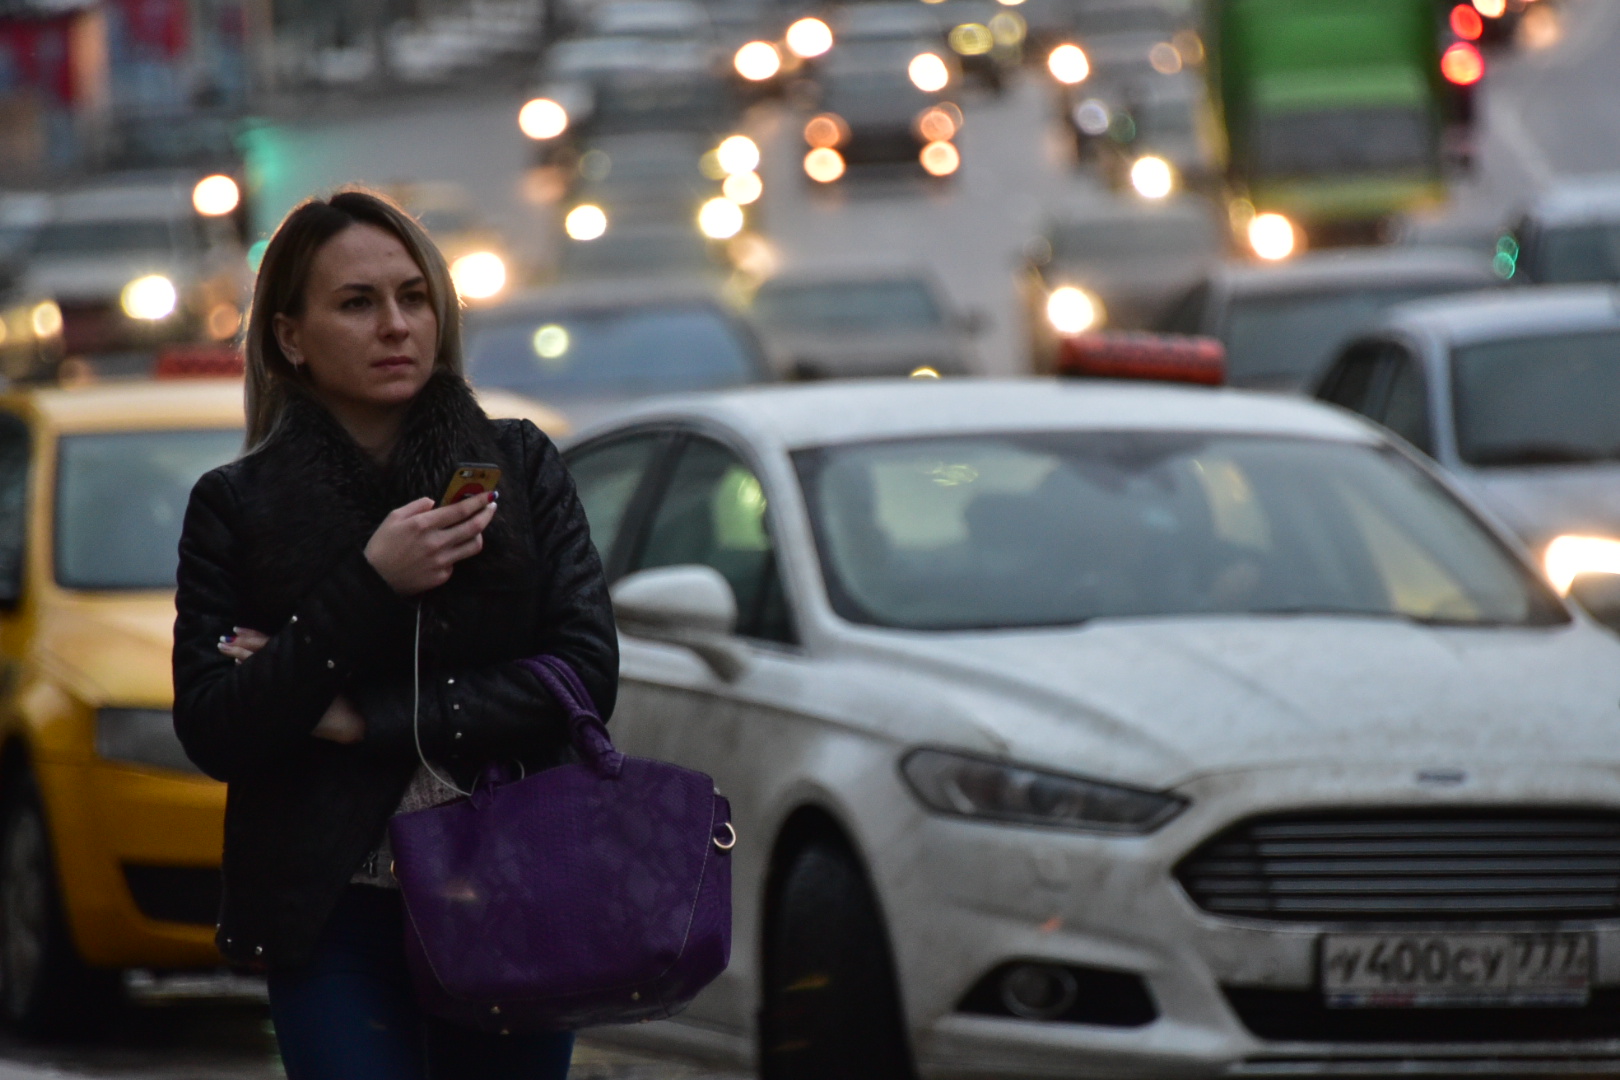 Департамент транспорта рекомендует столичным автолюбителям пользоваться общественным транспортом в связи с непогодой. Фото: архив, «Вечерняя Москва»